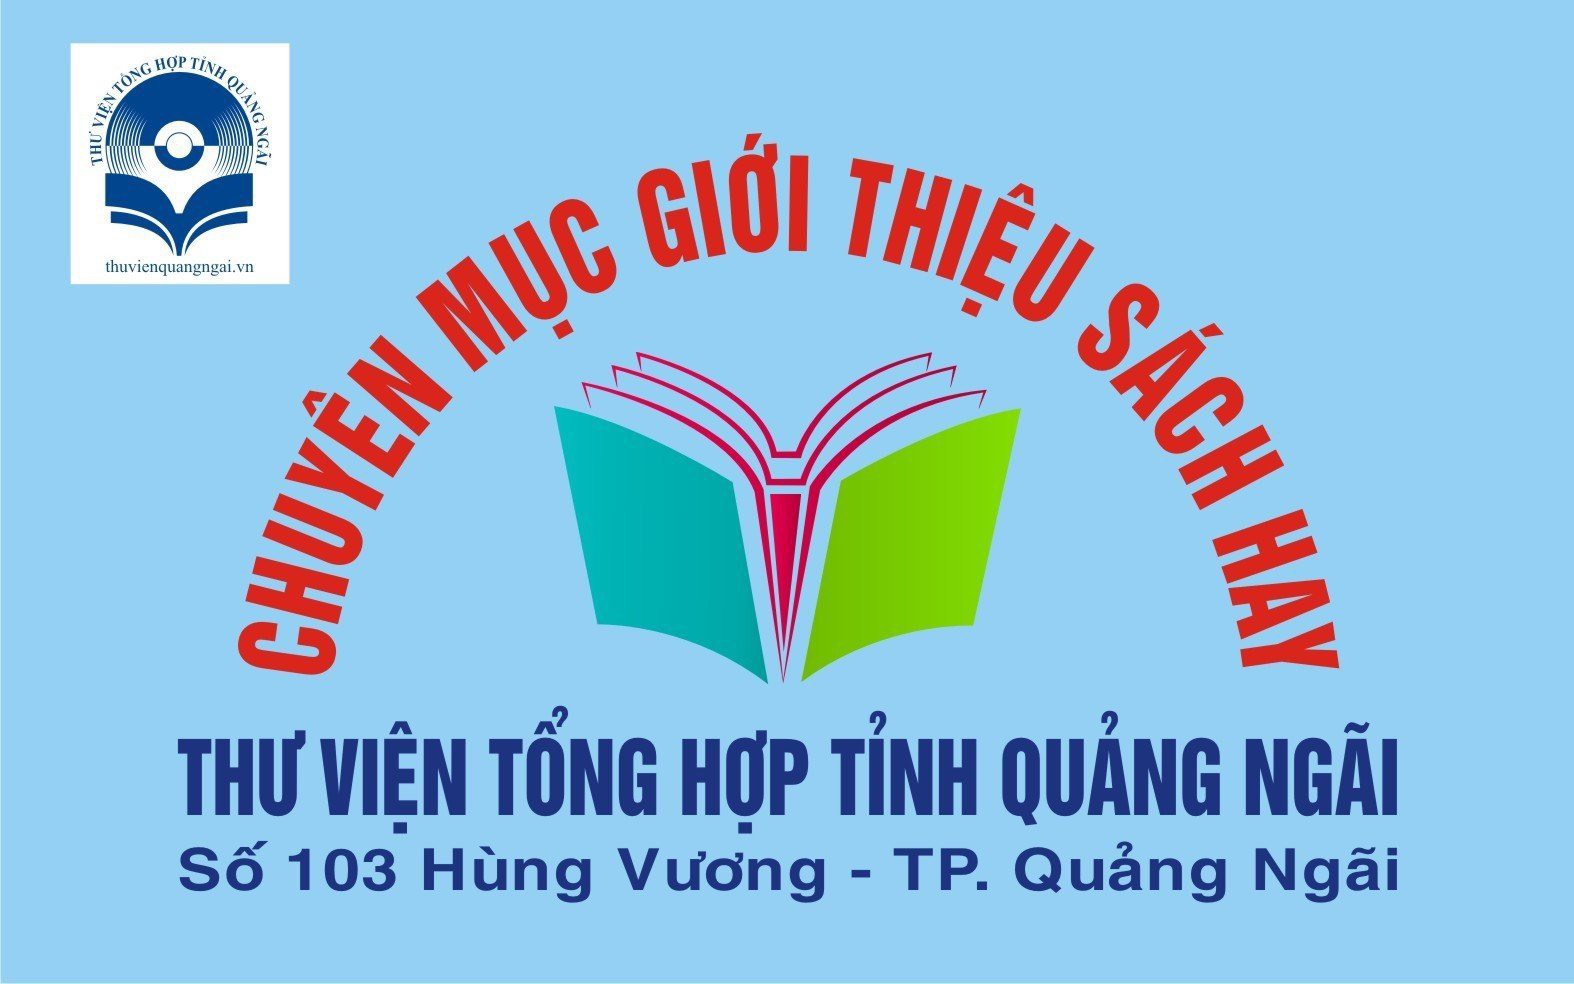 Video giới thiệu sách với chủ đề xây dựng Đảng về đạo đức theo tư tưởng Hồ Chí Minh